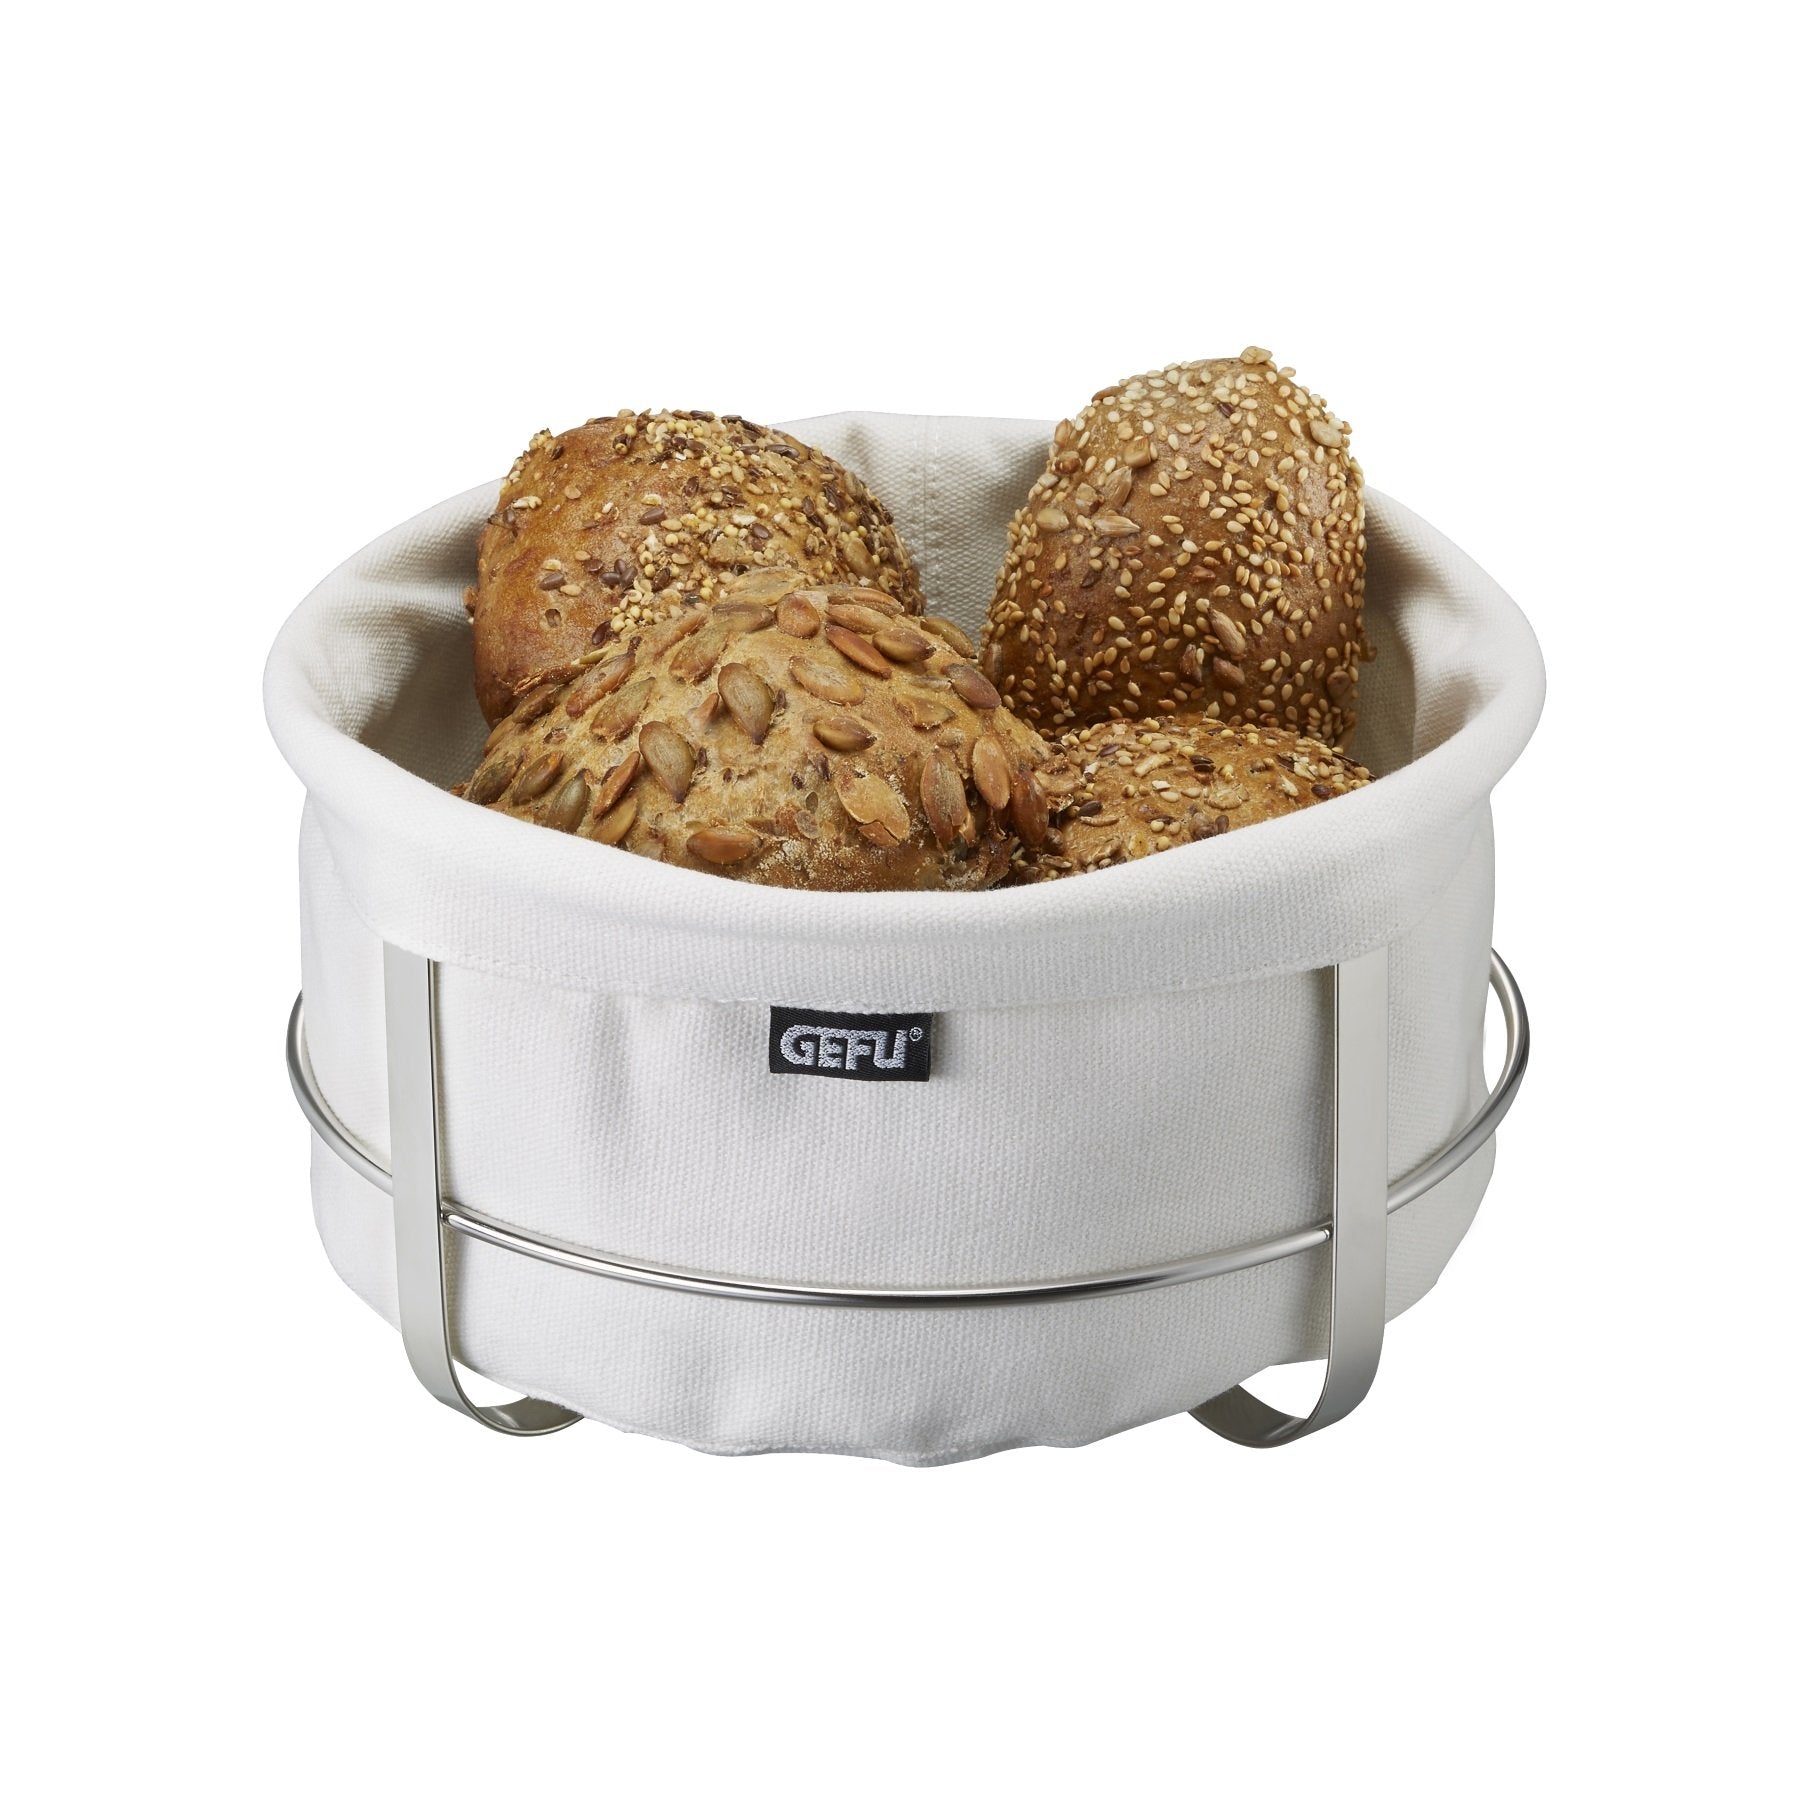 GEFU Bread Basket Brunch, Round, White - Whole and All